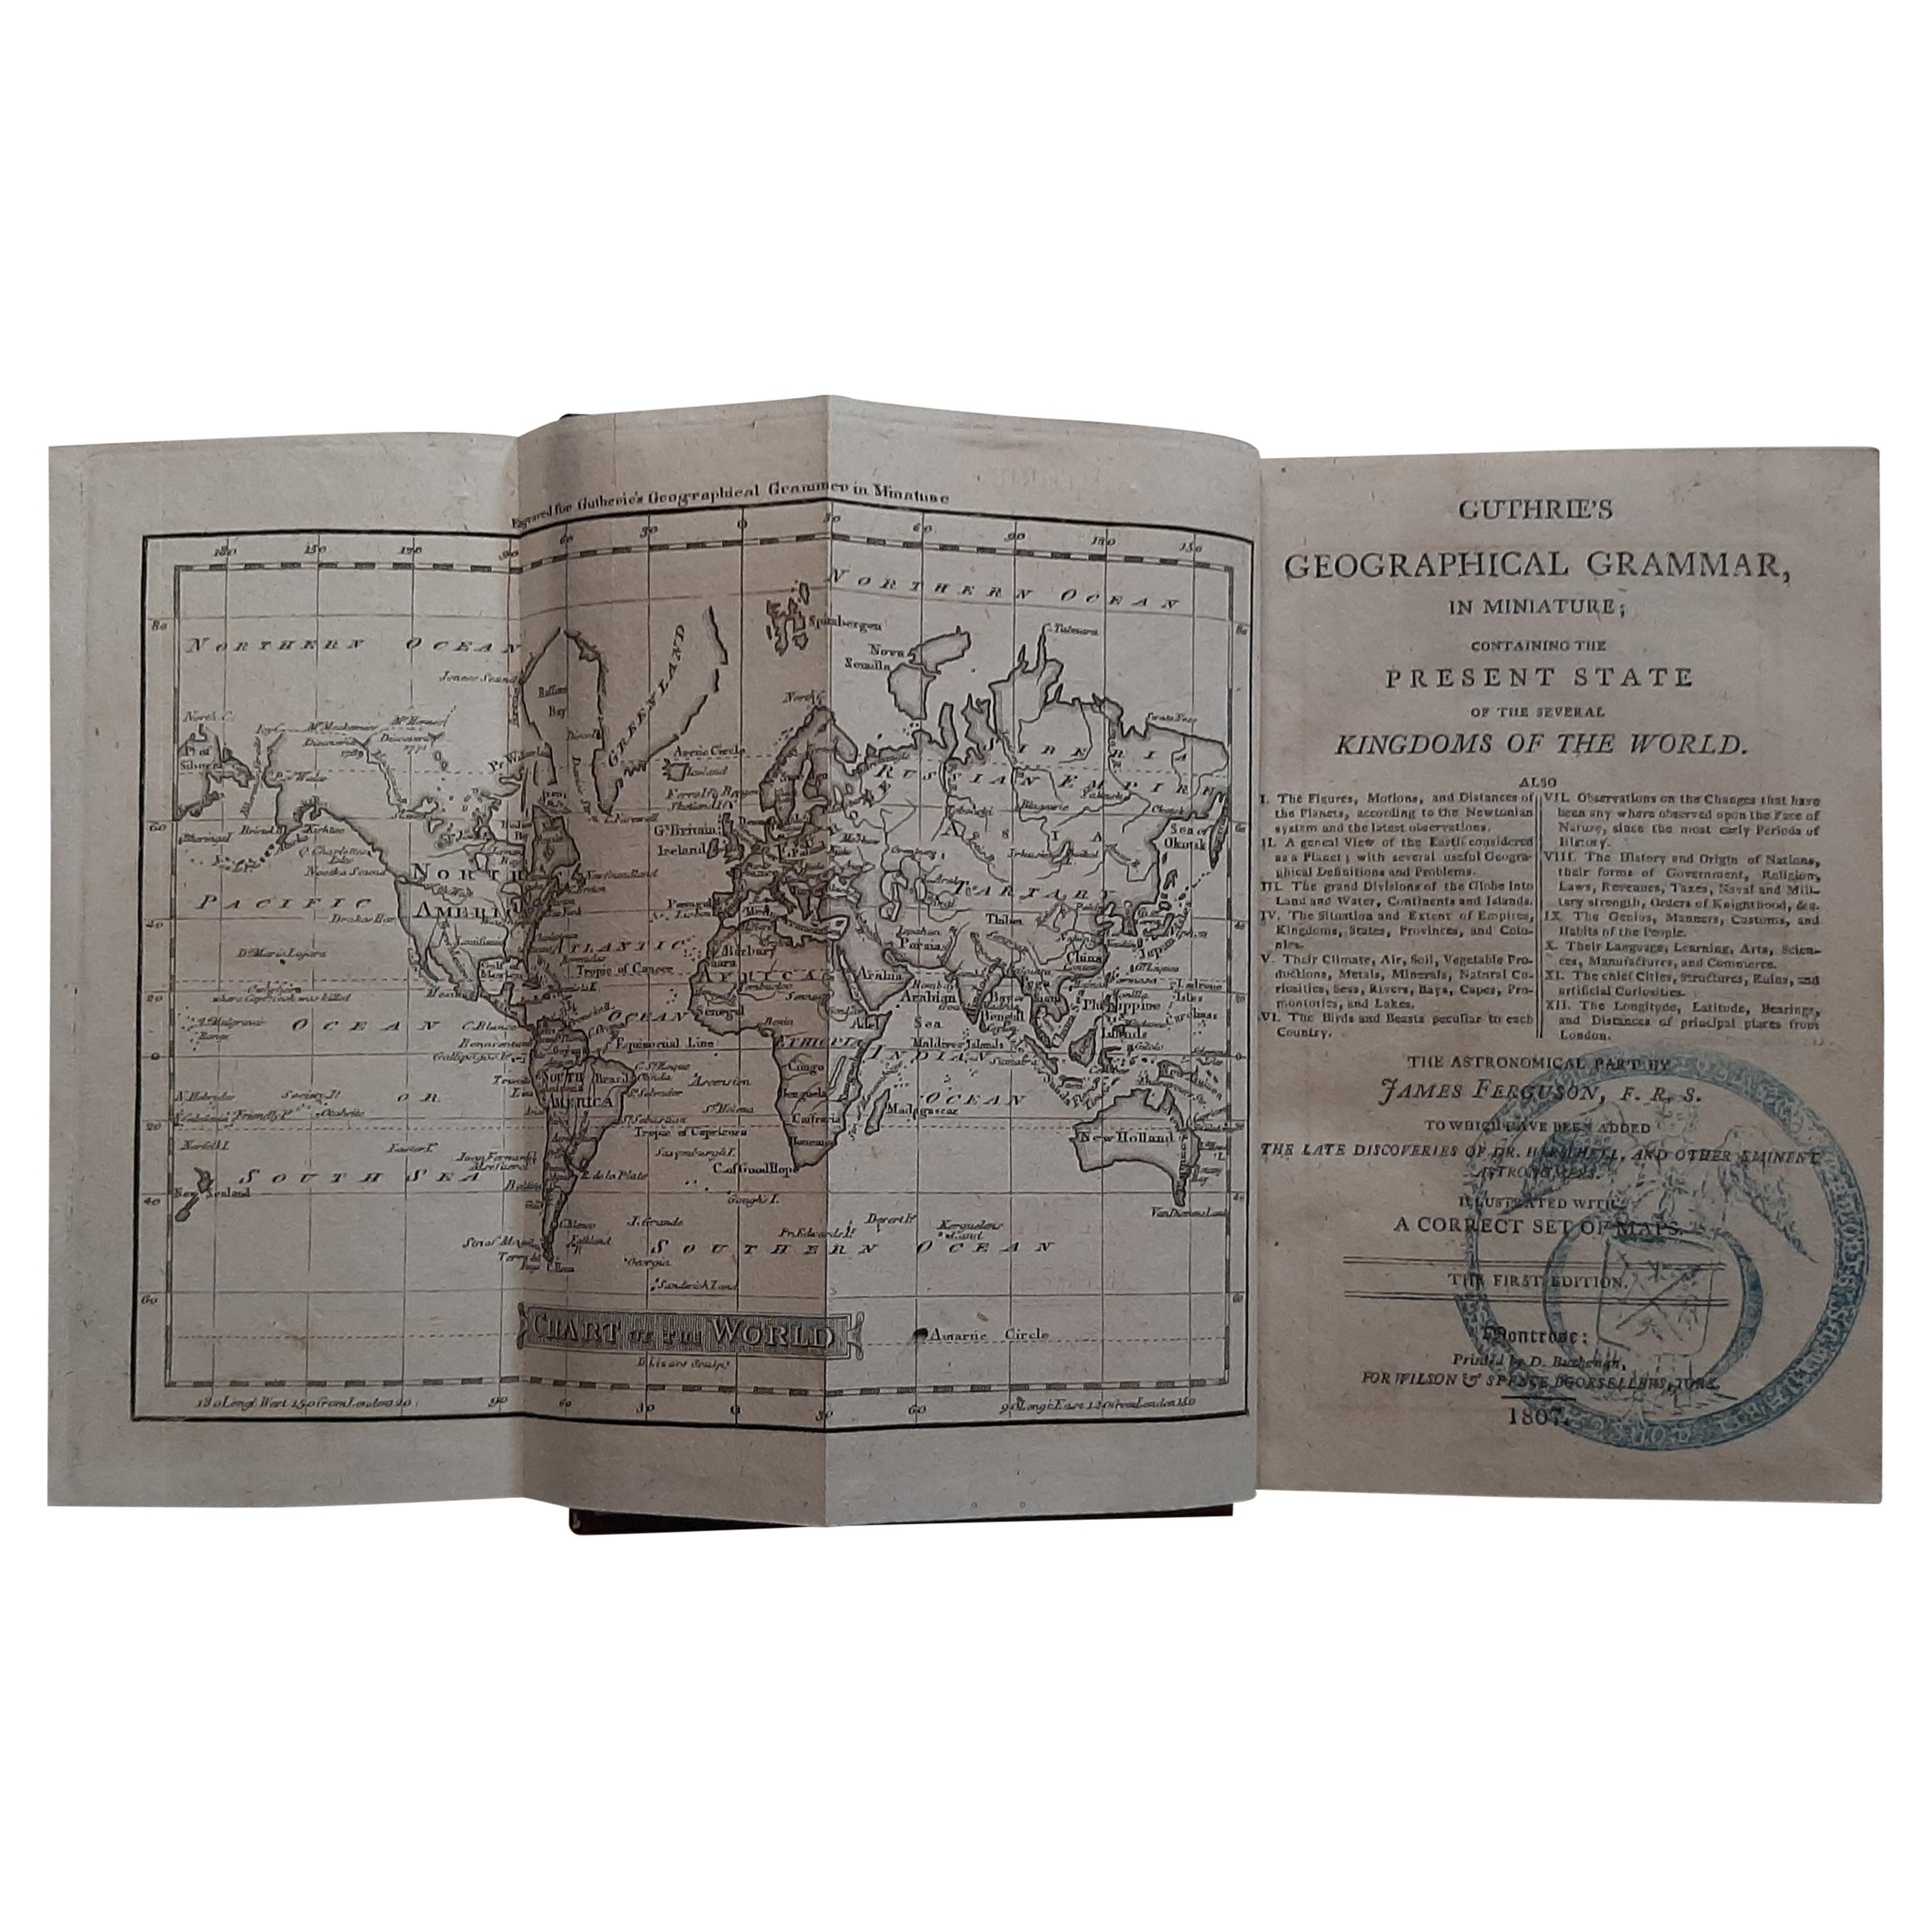 Erstausgabe von Guthrie's Geographical Grammmar in Miniatur, 1807